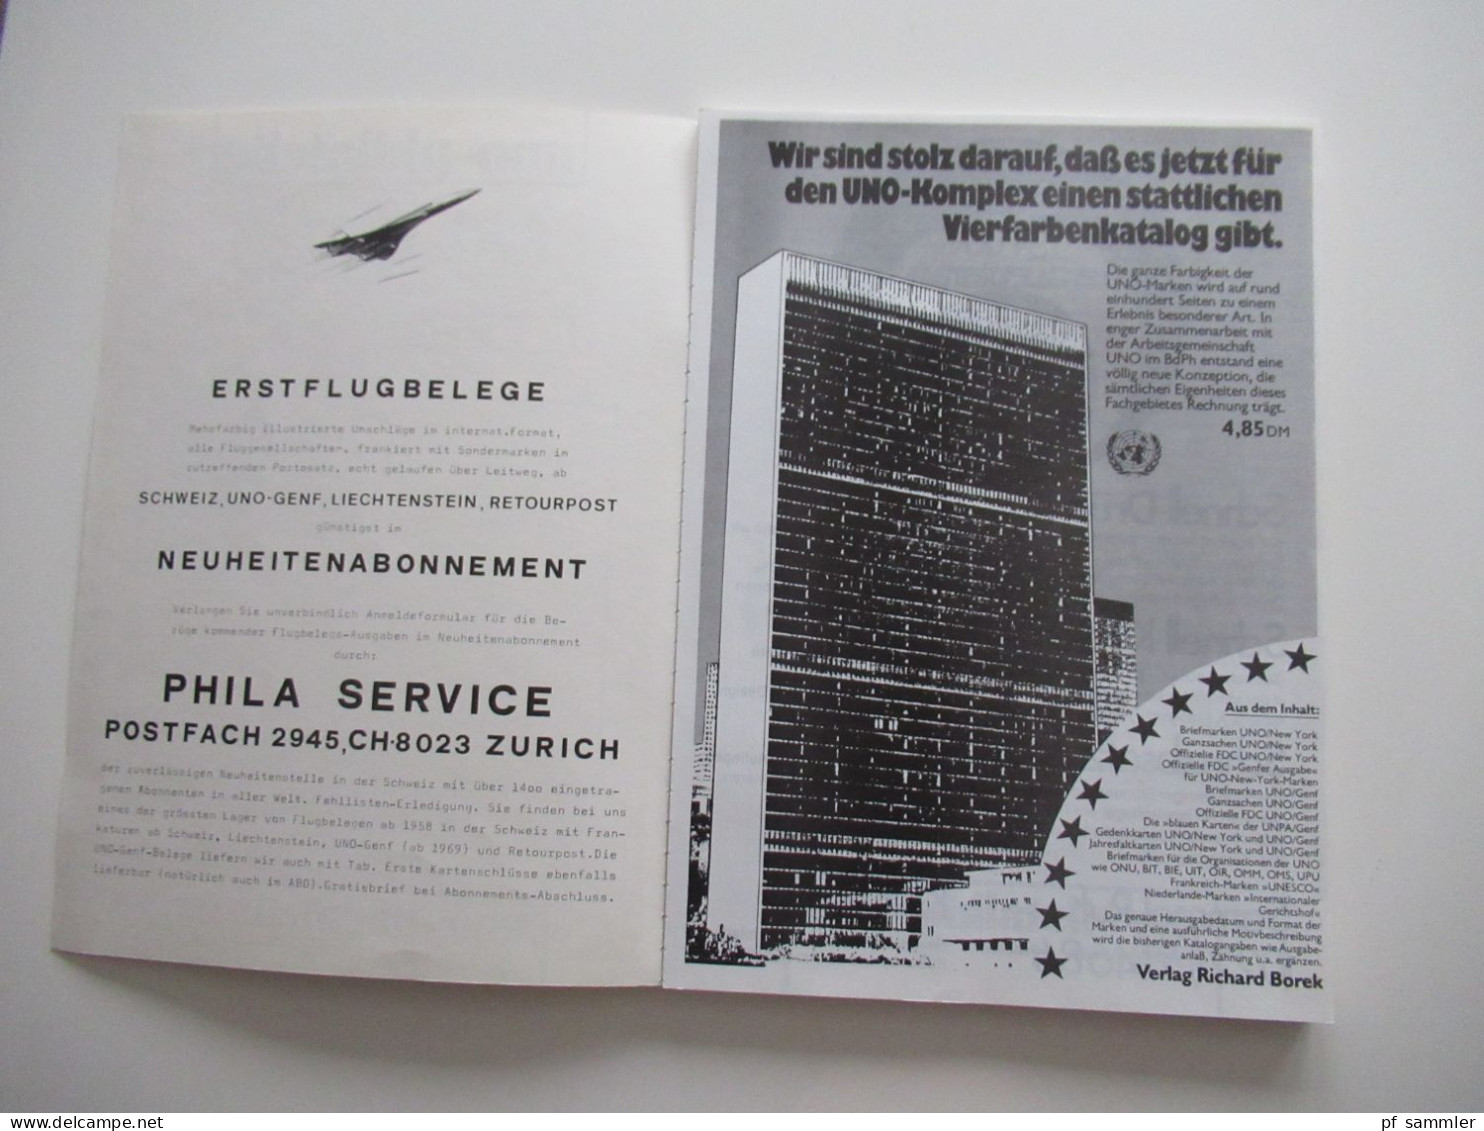 UNO - Philatelie, Handbuch Hb 76, Erstflugbriefe Der Vereinten Nationen, United Nations First Flight Covers 1959 - 1976 - Catalogues